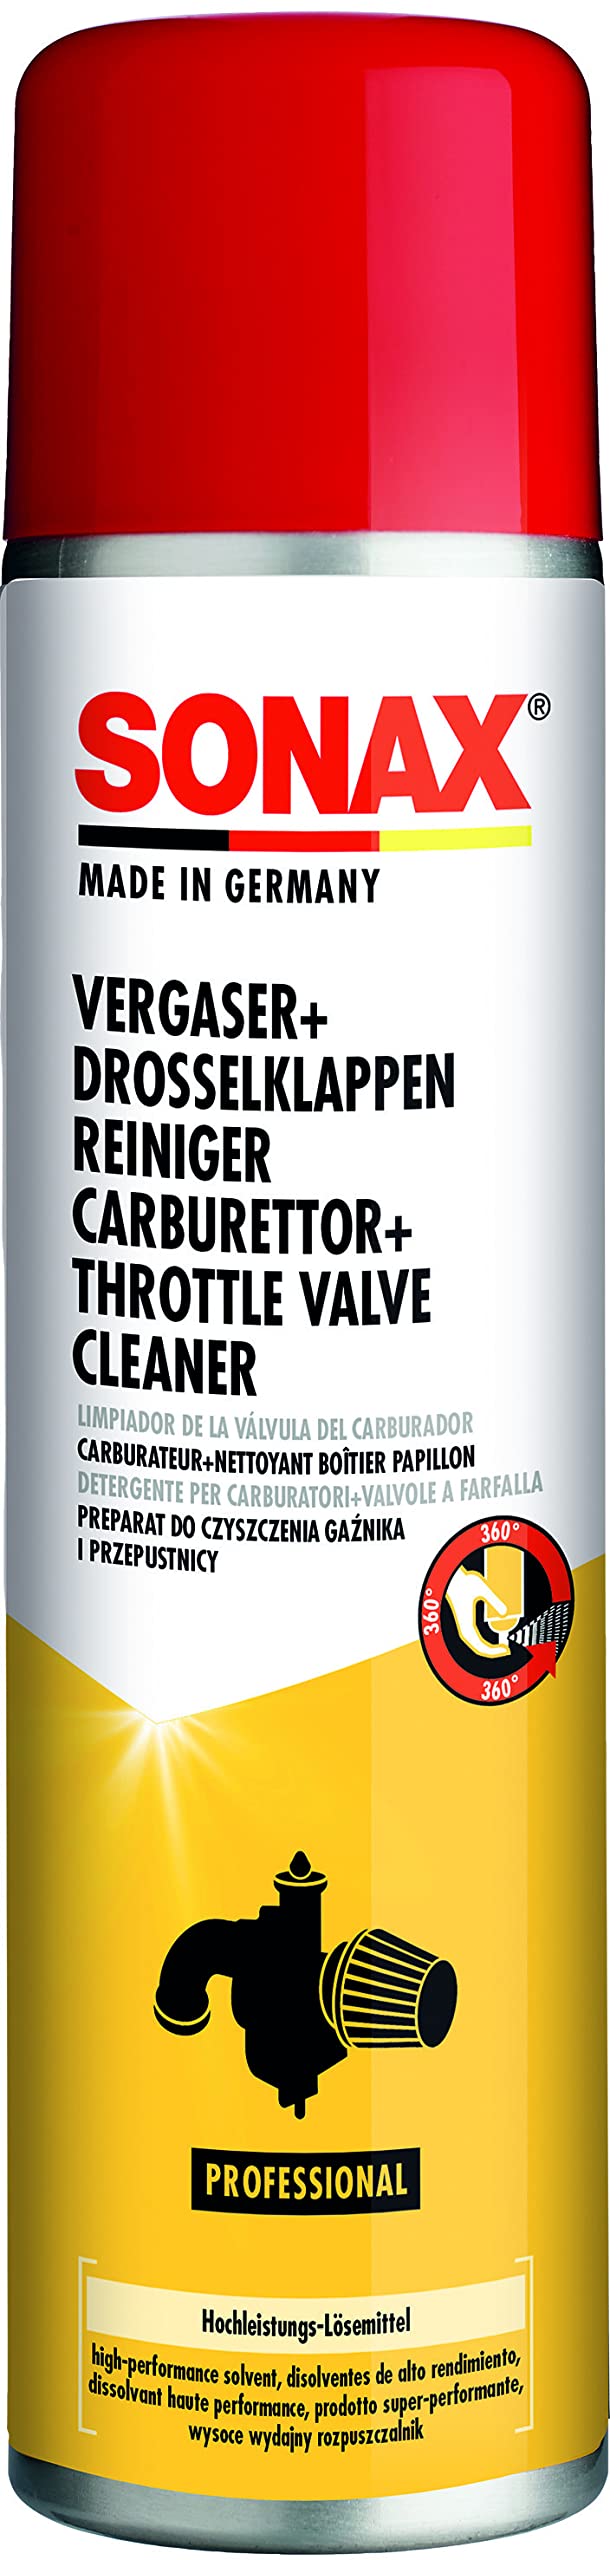 SONAX Vergaser + DrosselklappenReiniger (400 ml) Hochleistungs-Lösemittel für stark verschmutzte und verkokte Motorteile | Art-Nr. 04883000 von SONAX